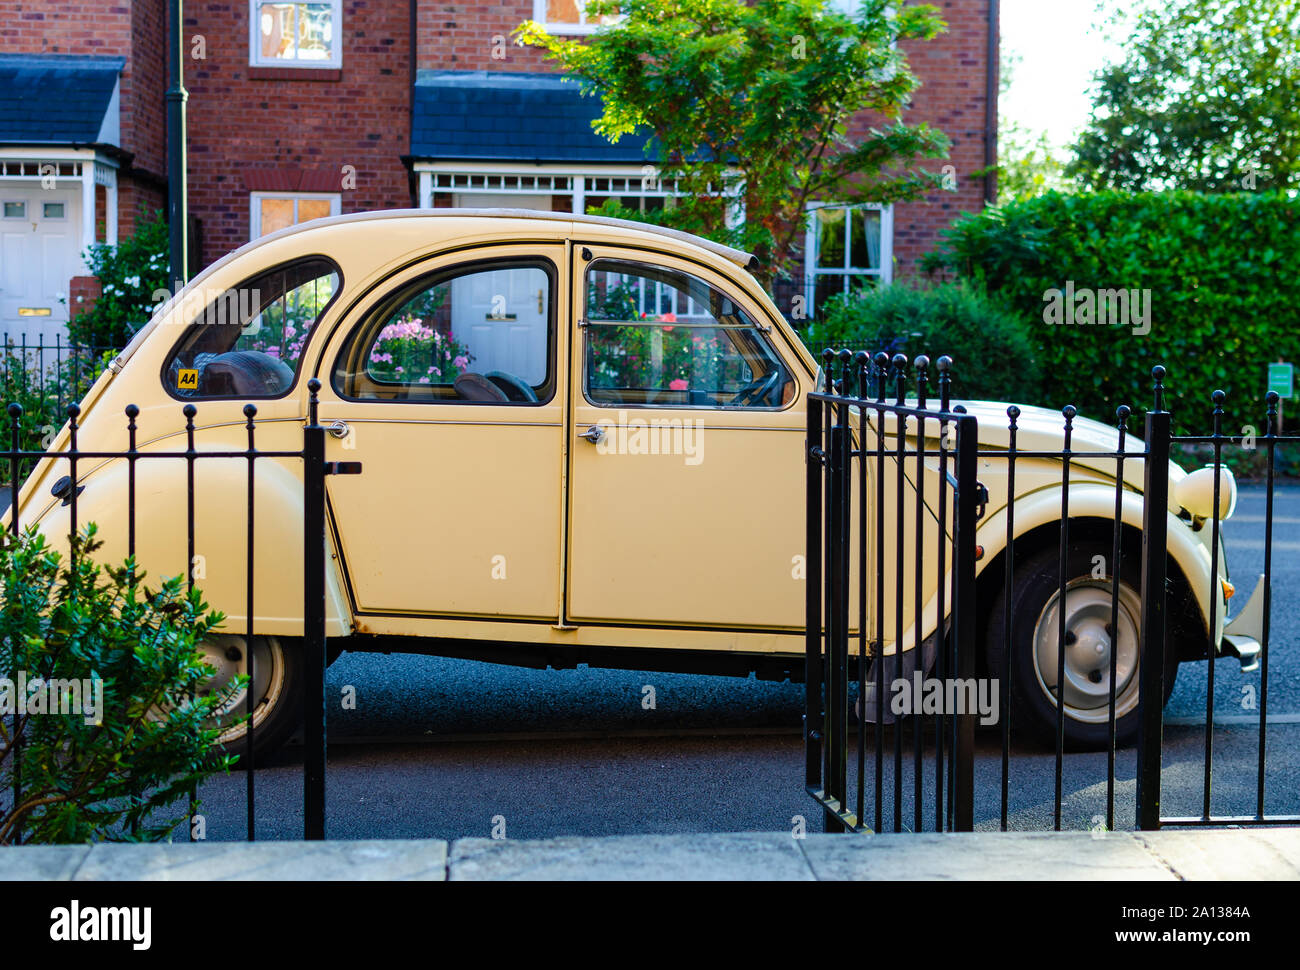 La voiture Citroën 2CV garée à côté d'une maison pittoresque en Angleterre. Banque D'Images